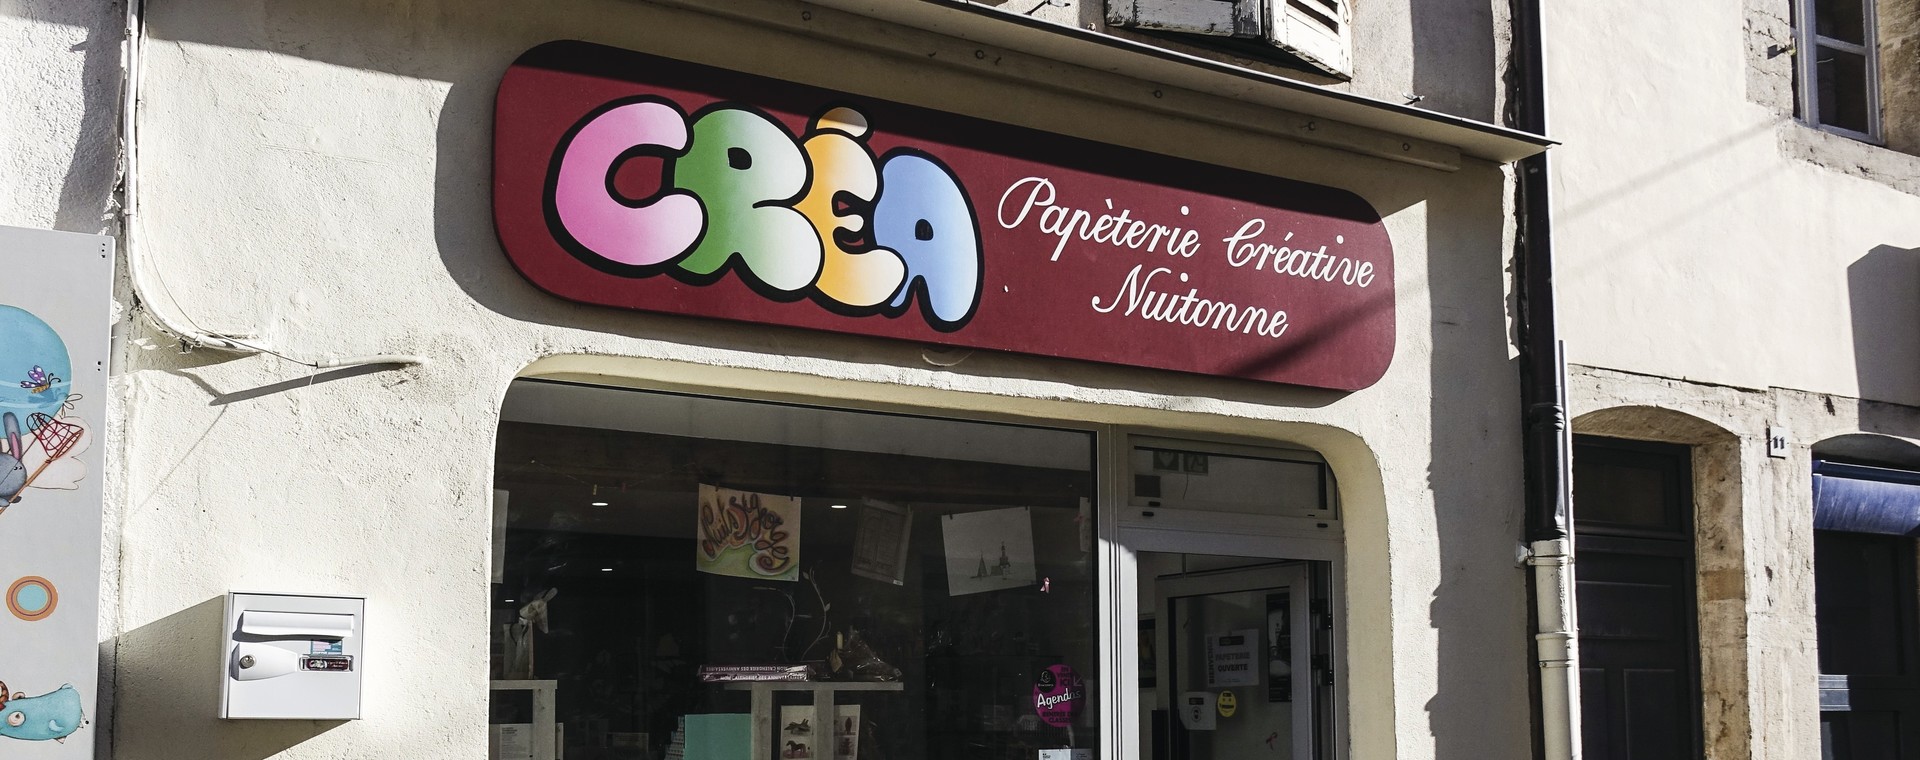 Boutique PAPETERIE CREATIVE NUITONNE - Côte-d'Or